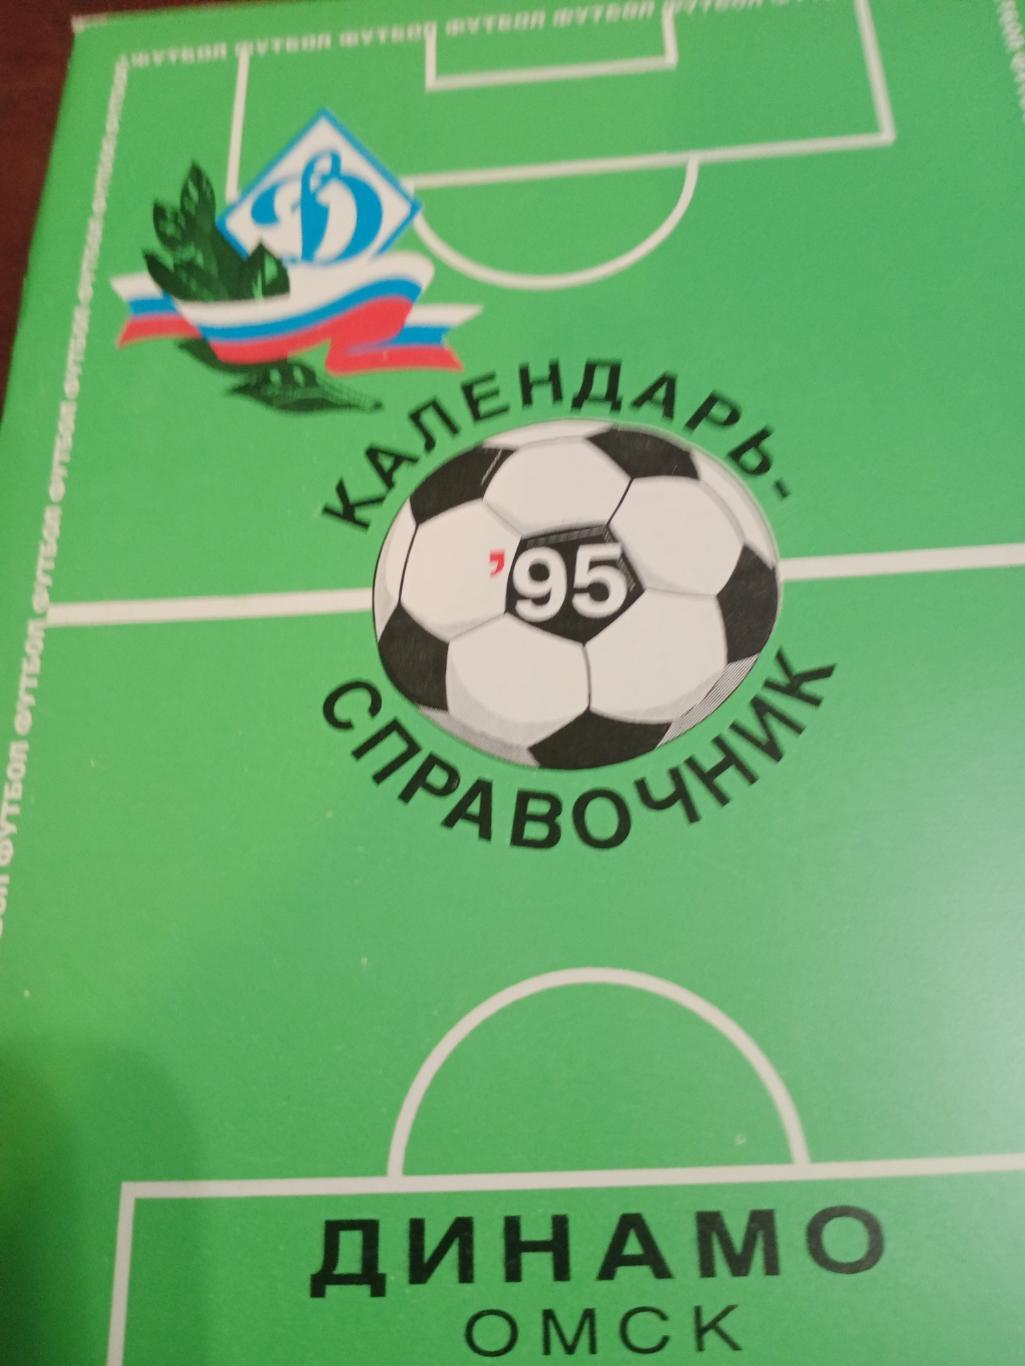 Футбол. Динамо, Омск - 95